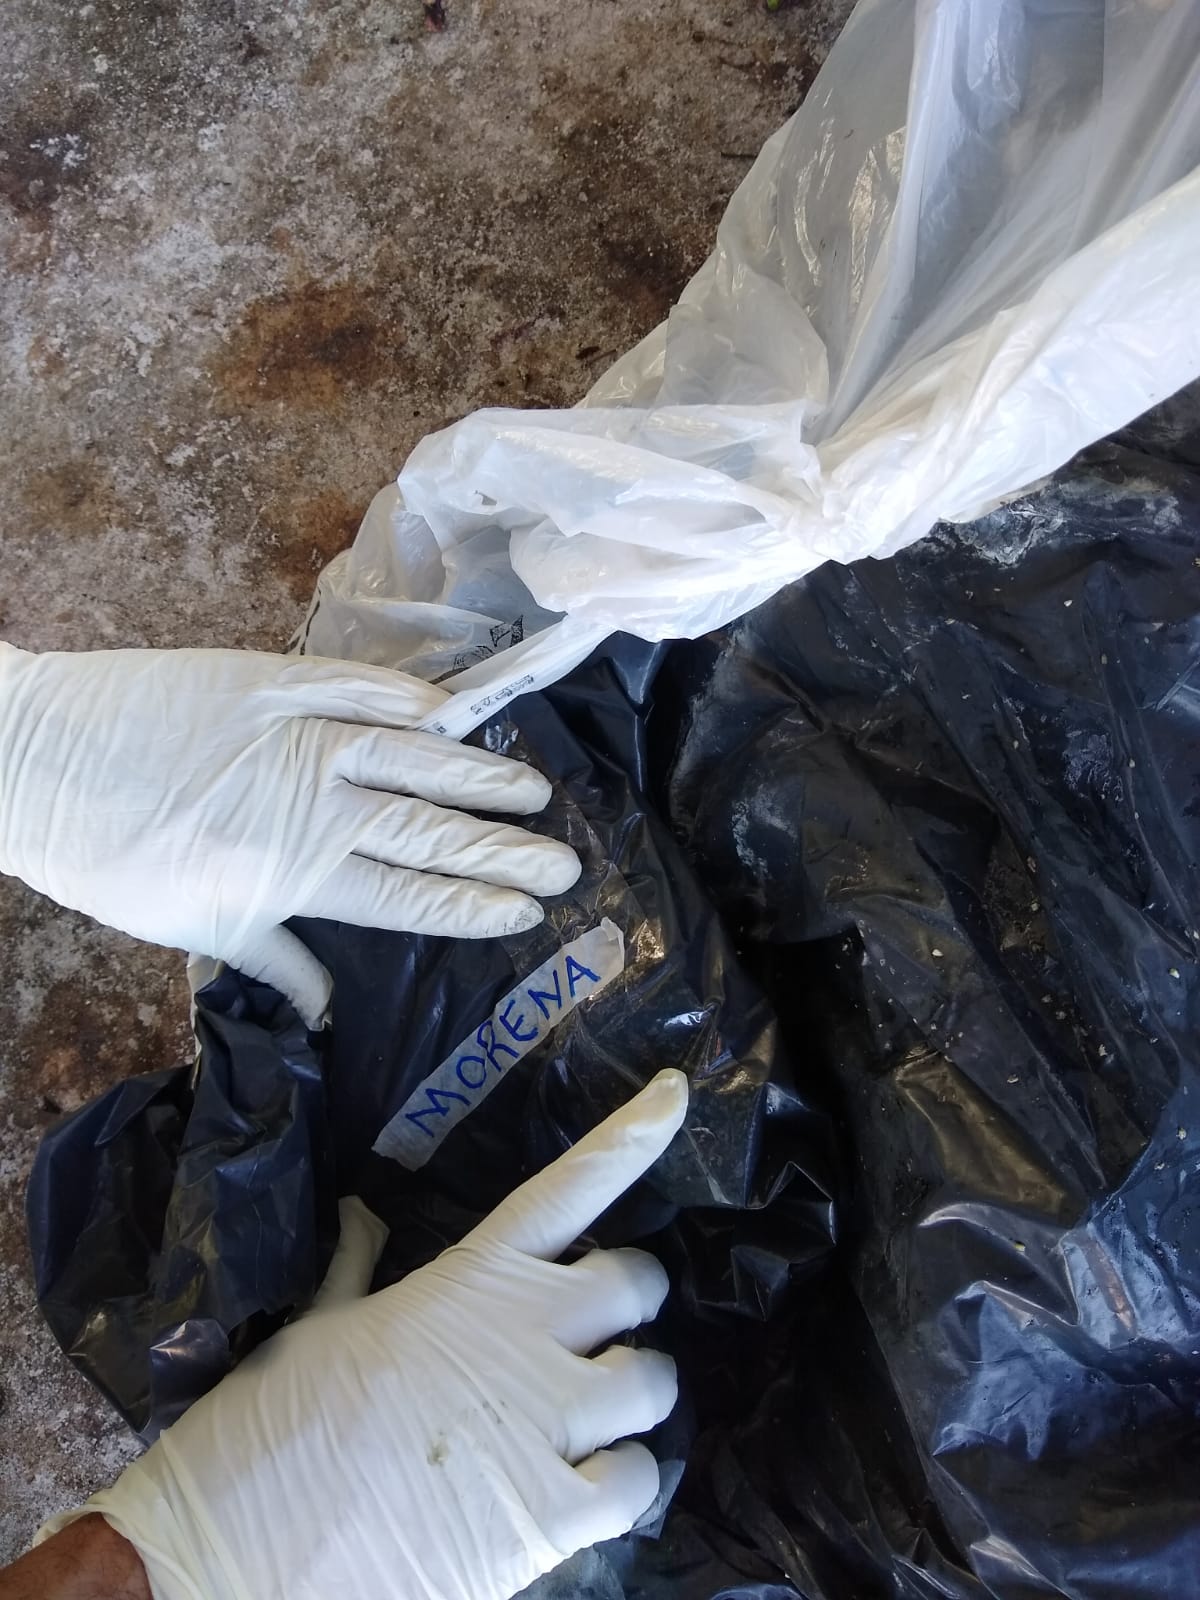 Animais abandonados em sacos pretos estavam mortos e caso será investigado 